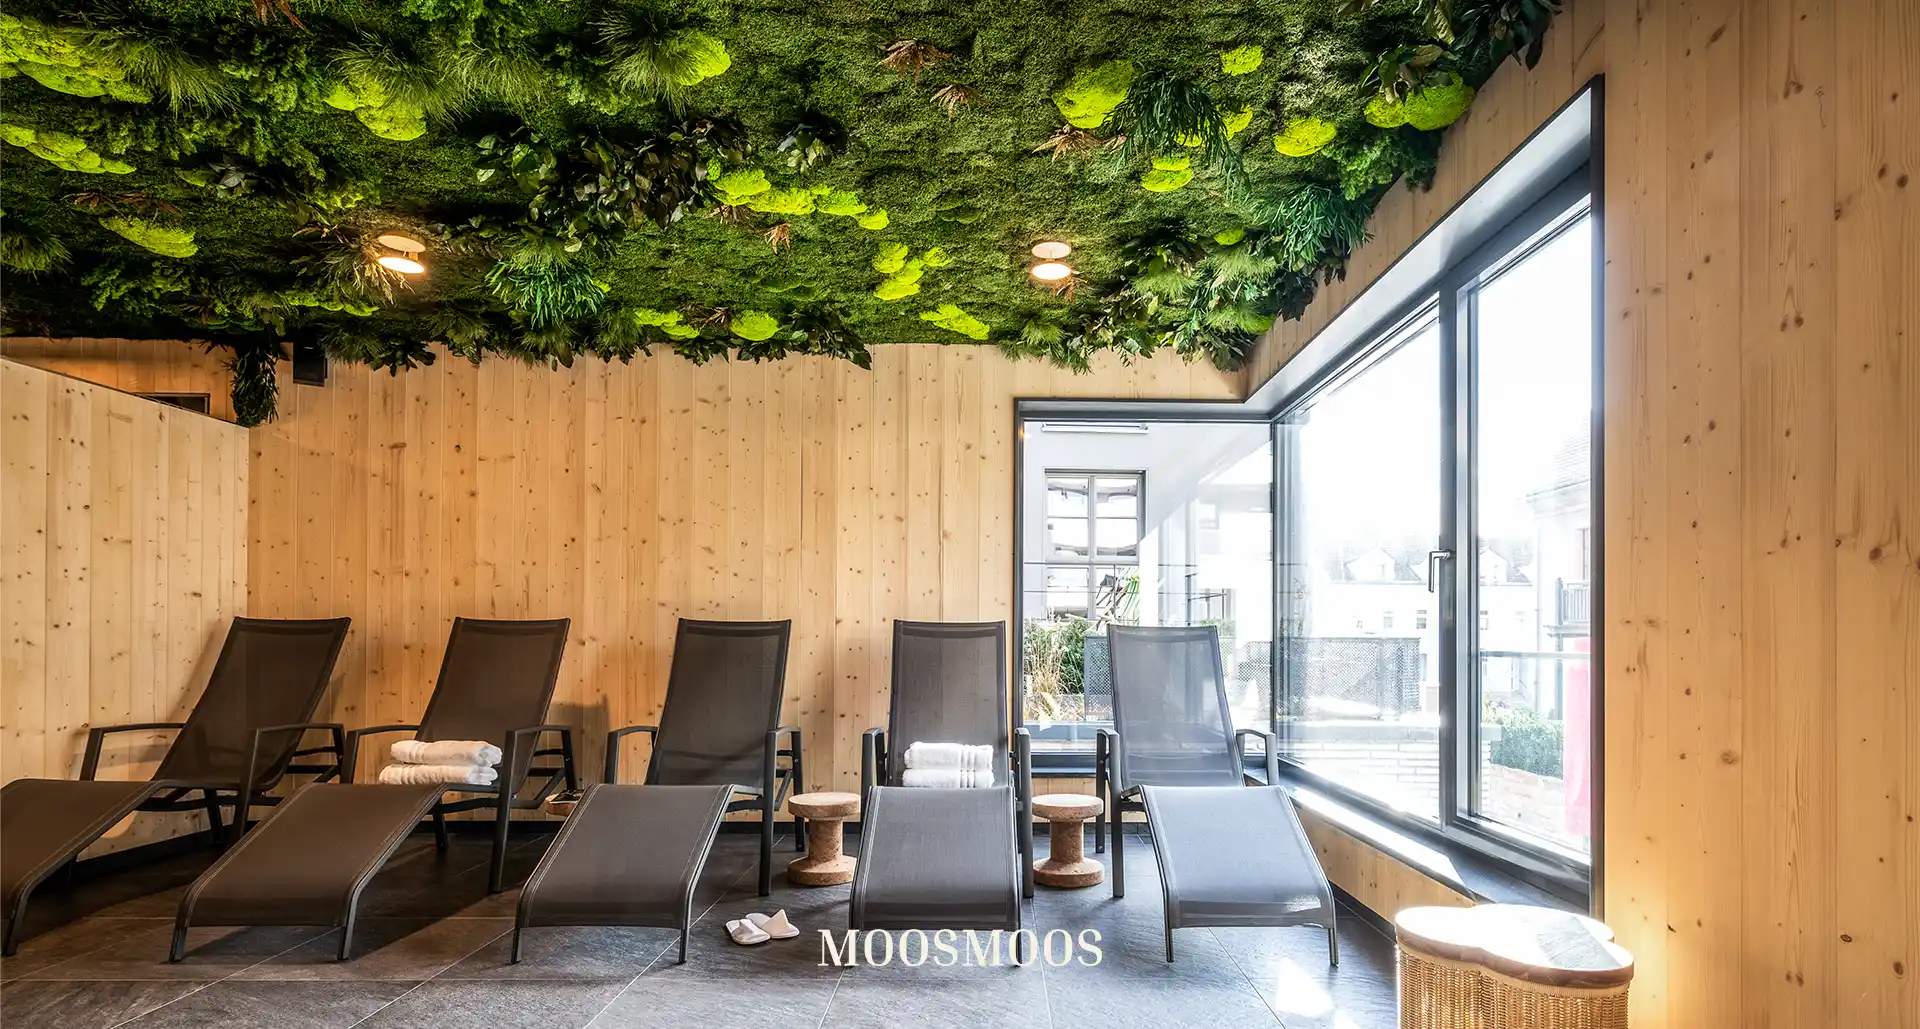 MOOSMOOS Deckenverkleidung / Mooswand an der Decke im Saunabereich mit Moos und Pflanzen